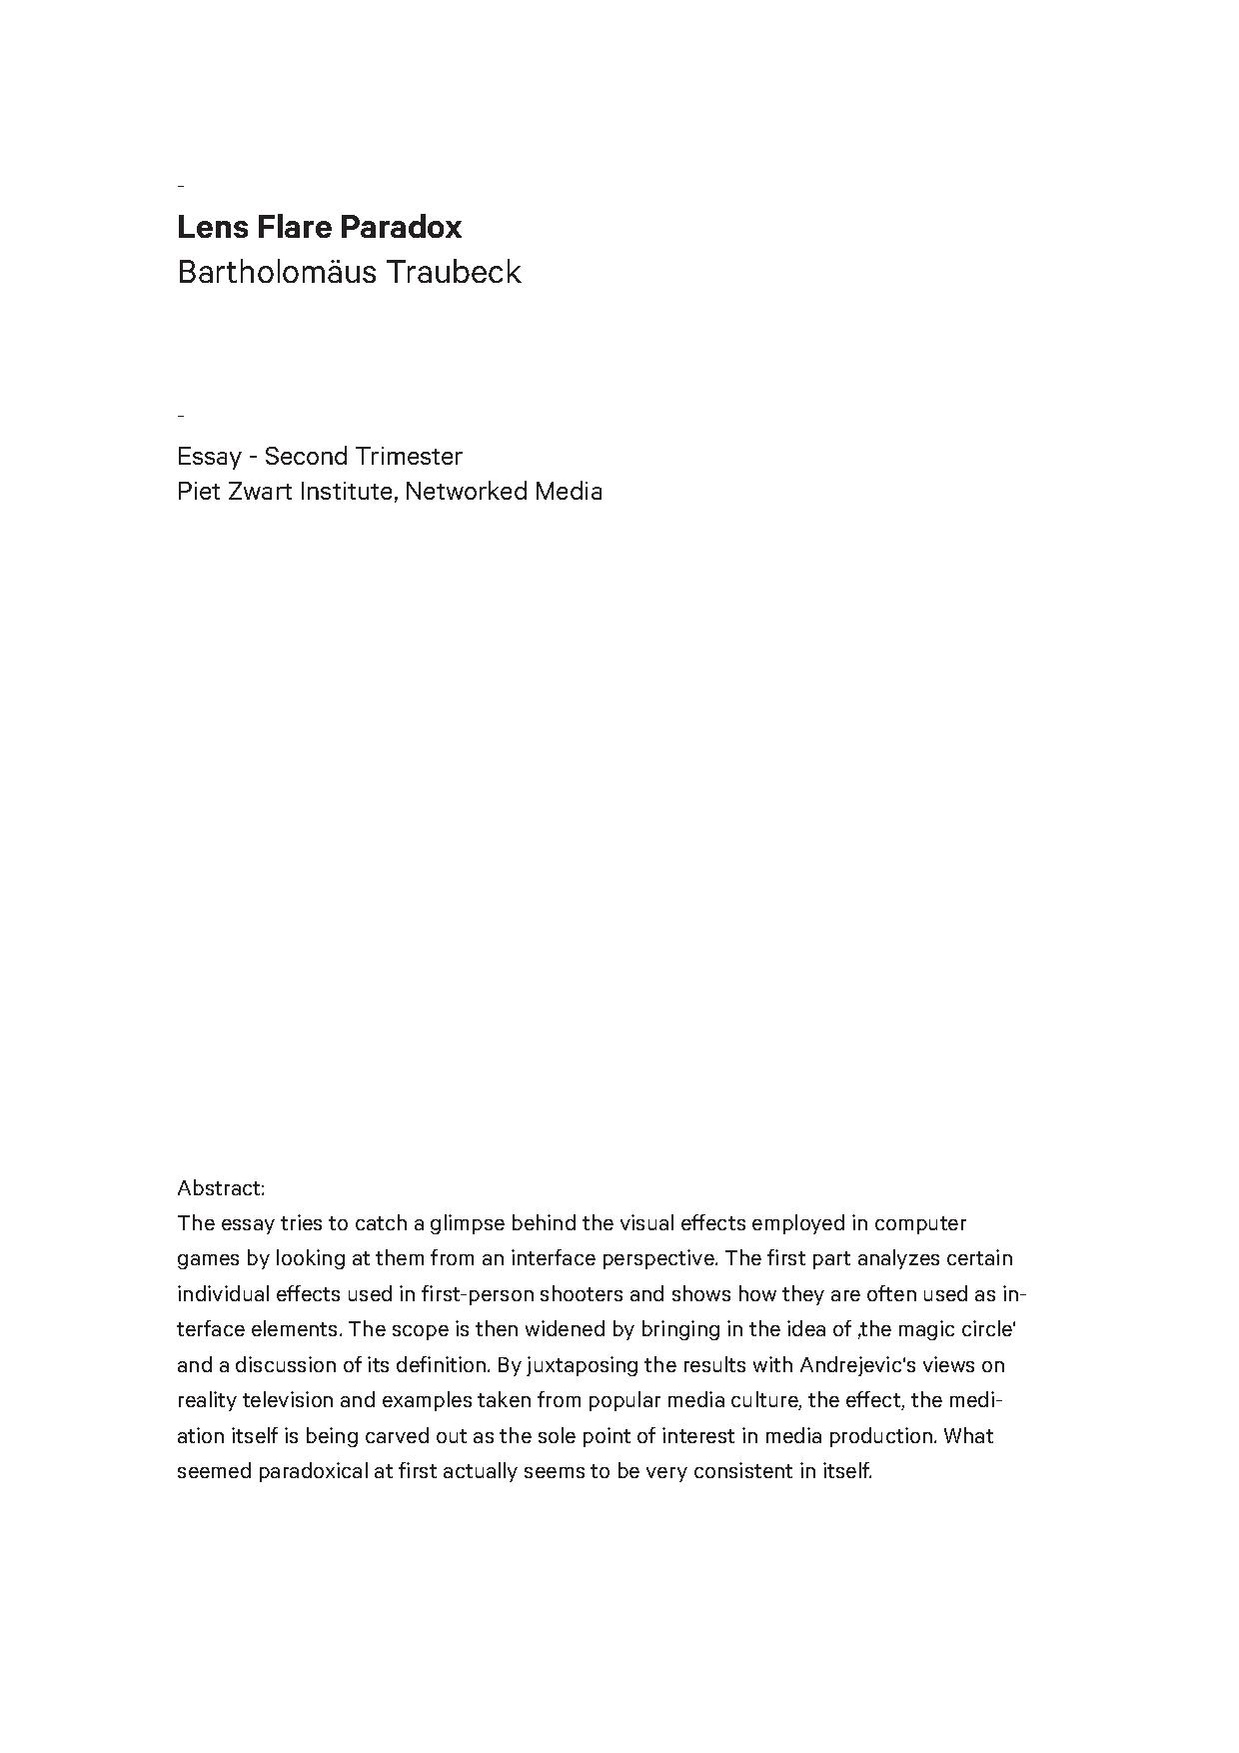 Trim2 essay traubeck.pdf